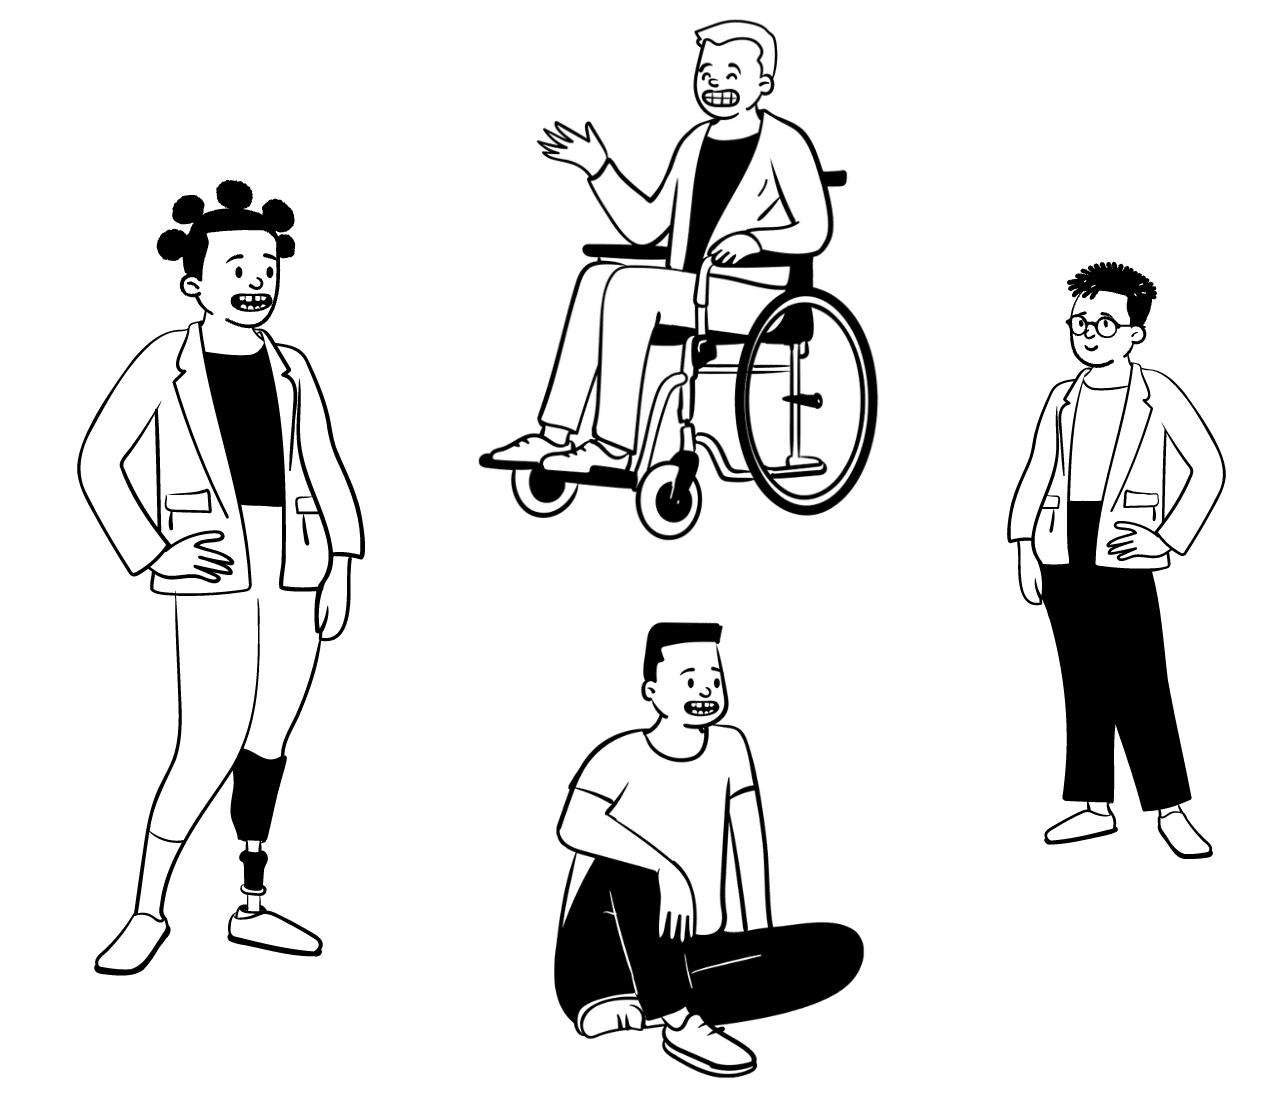 Tegning af forskellige mennesker, herunder mænd og kvinder, med og uden briller, en med et kunstigt ben og en, der bruger kørestol. De fleste er glade, men en ser lidt bekymret eller nedtrykt ud